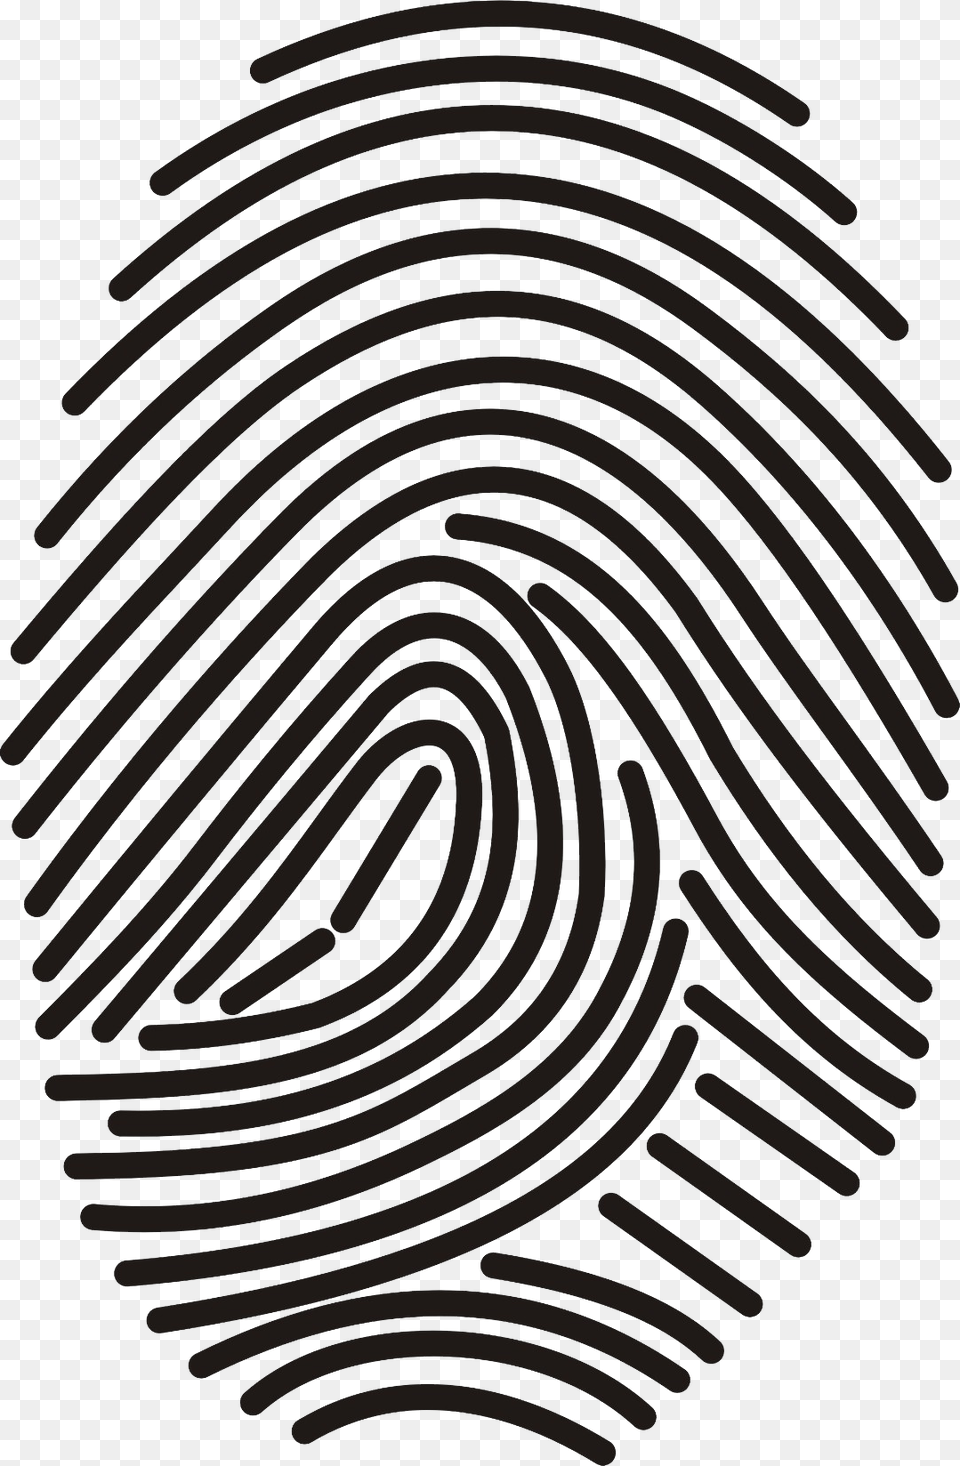 Fingerprint, Spiral, Pattern Free Transparent Png